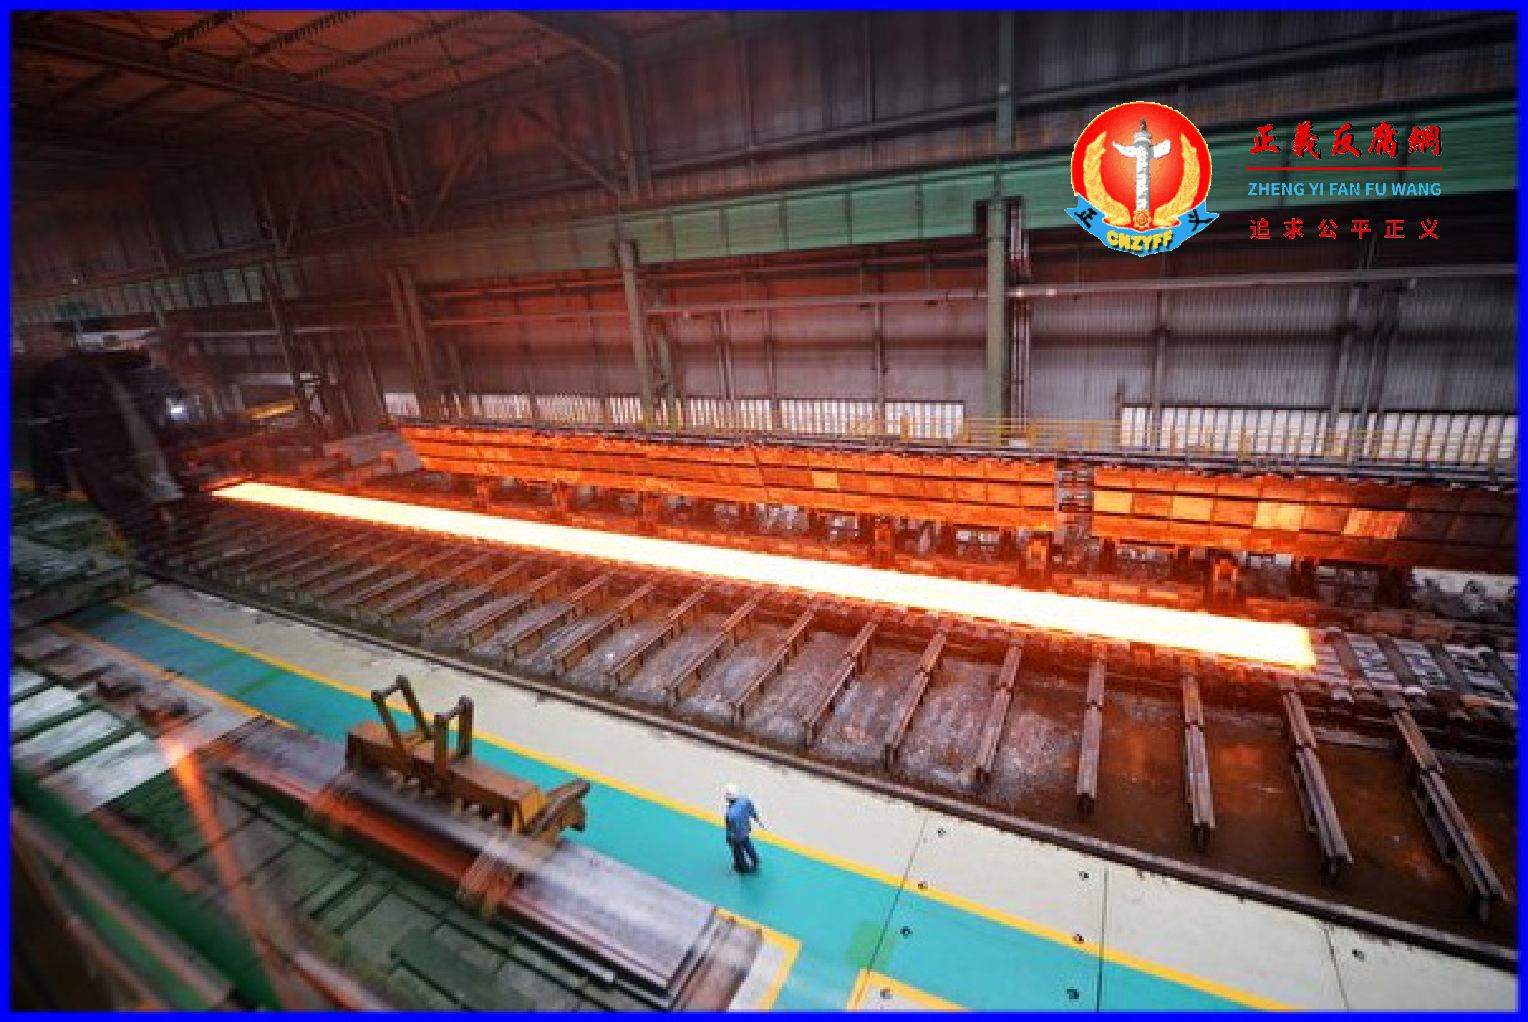 2015年4月11日，河北省唐山市一家钢铁厂的工人正在工作。中国各行业都在为巨额债务和产能过剩而苦苦挣扎。.png